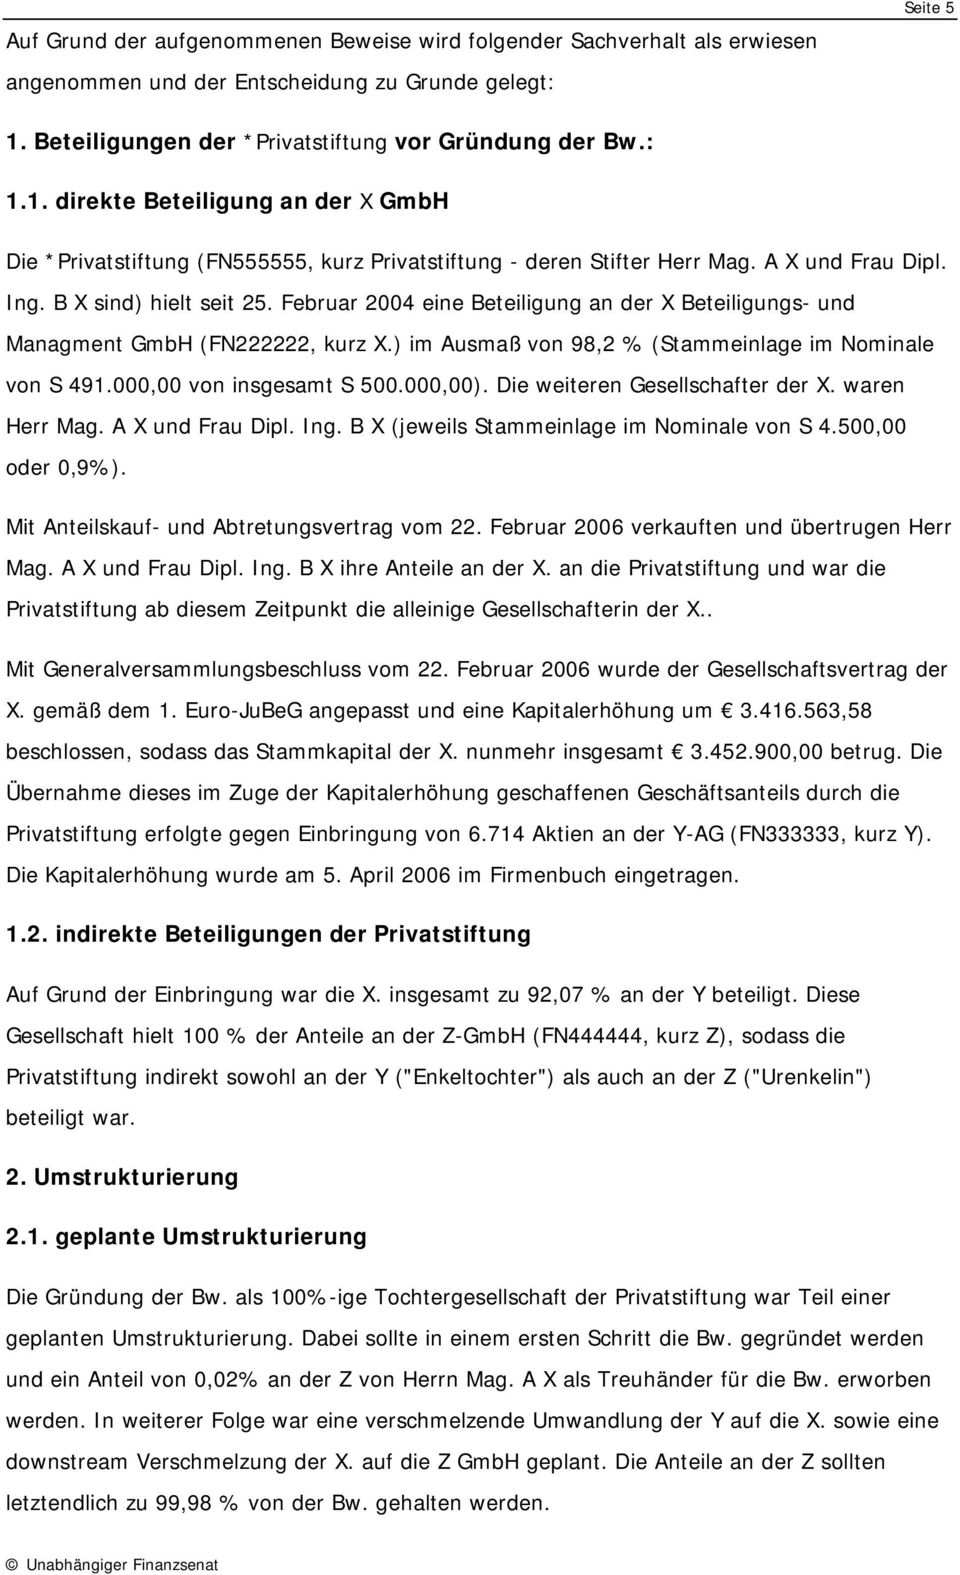 B X sind) hielt seit 25. Februar 2004 eine Beteiligung an der X Beteiligungs- und Managment GmbH (FN222222, kurz X.) im Ausmaß von 98,2 % (Stammeinlage im Nominale von S 491.